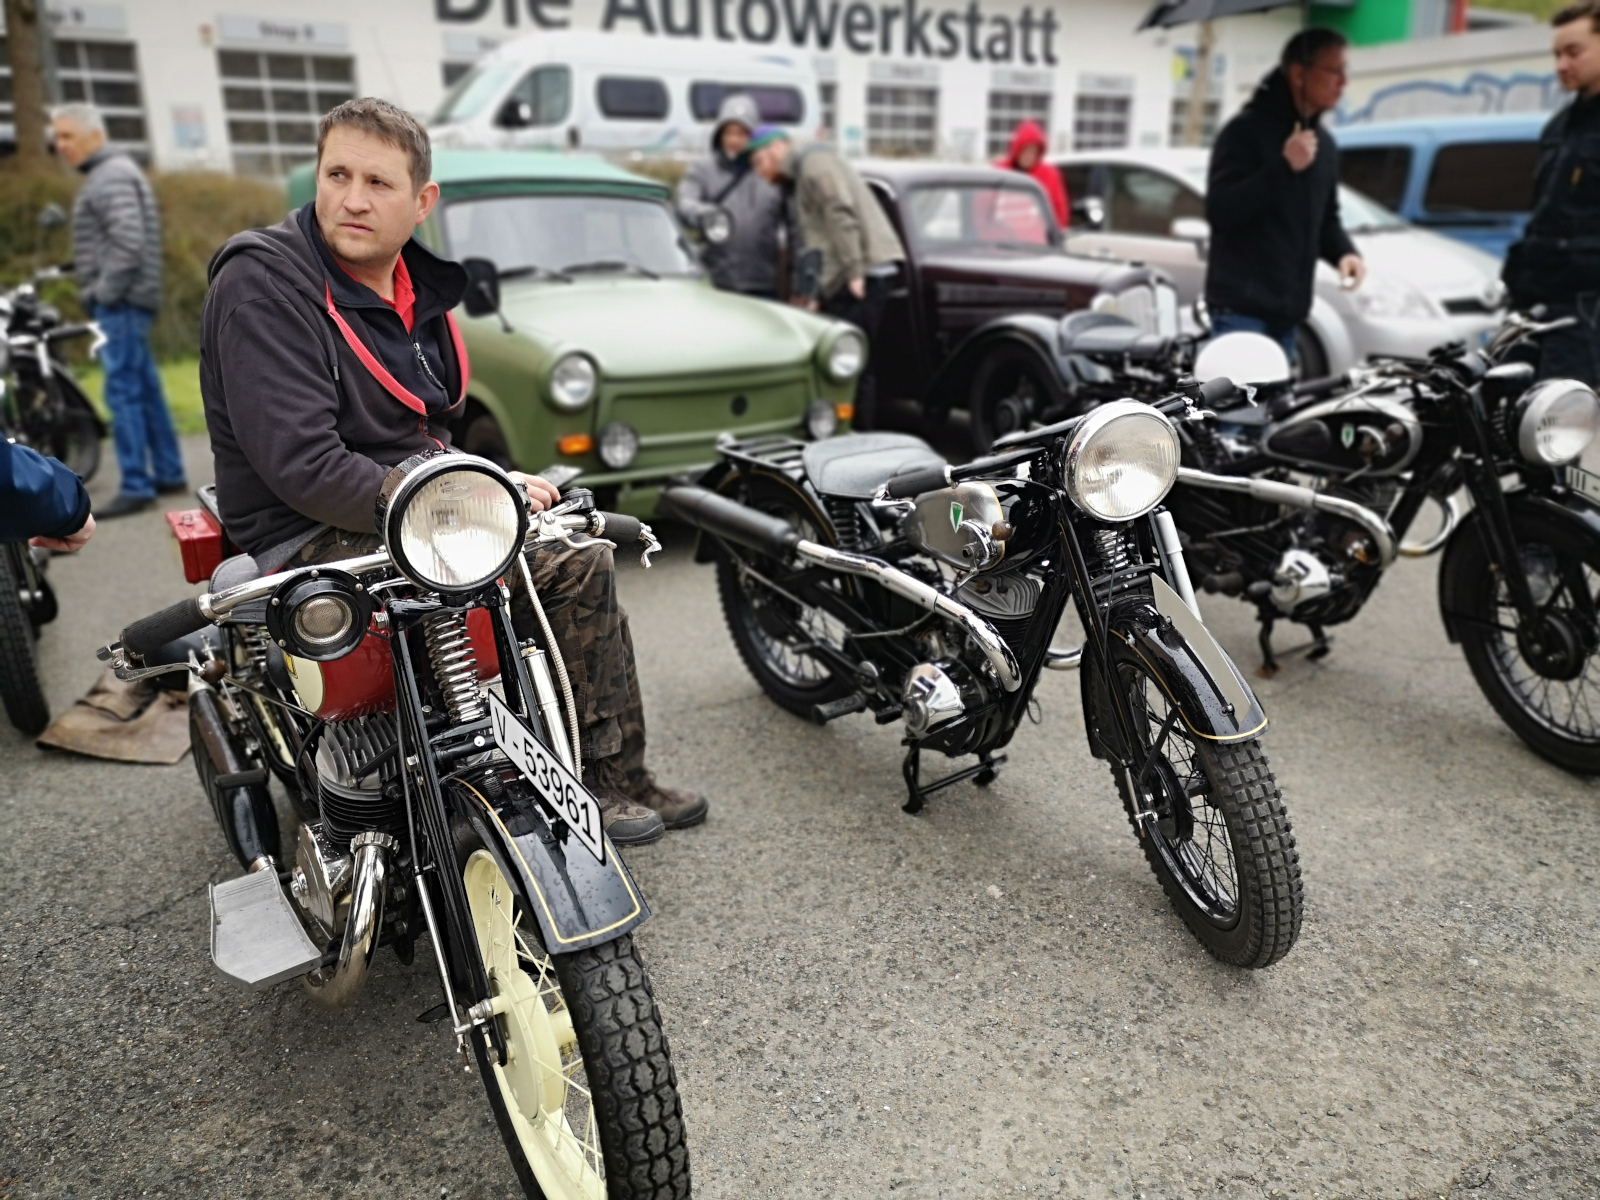 Motorräder auf dem Parkplatz beim DKW-Treffen